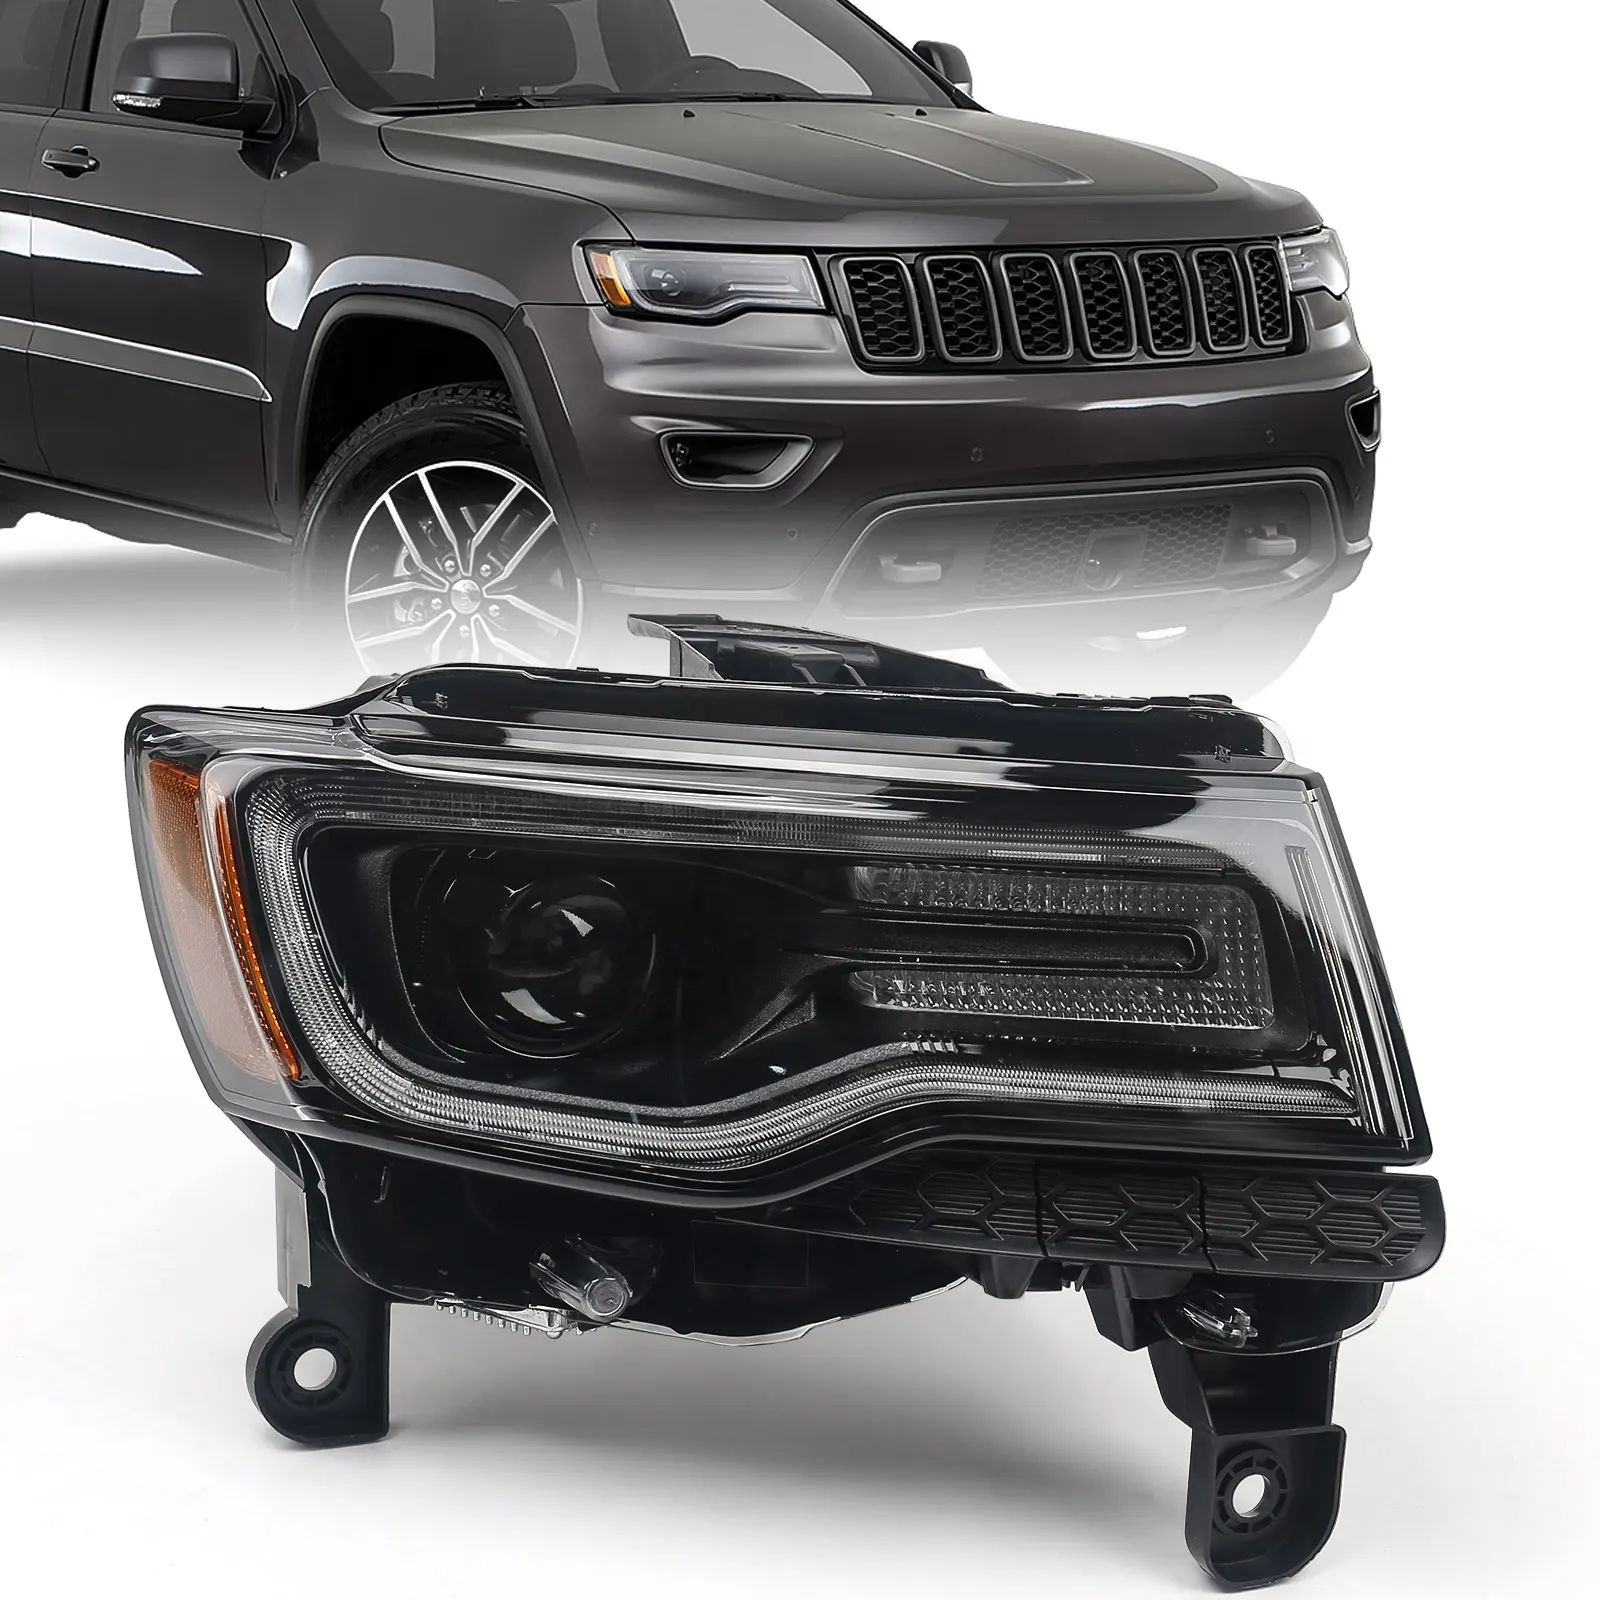 Sistema di illuminazione automatica faro anteriore nascosto per Jeep Grand Cherokee 2017-2020 lampada frontale americana specifica